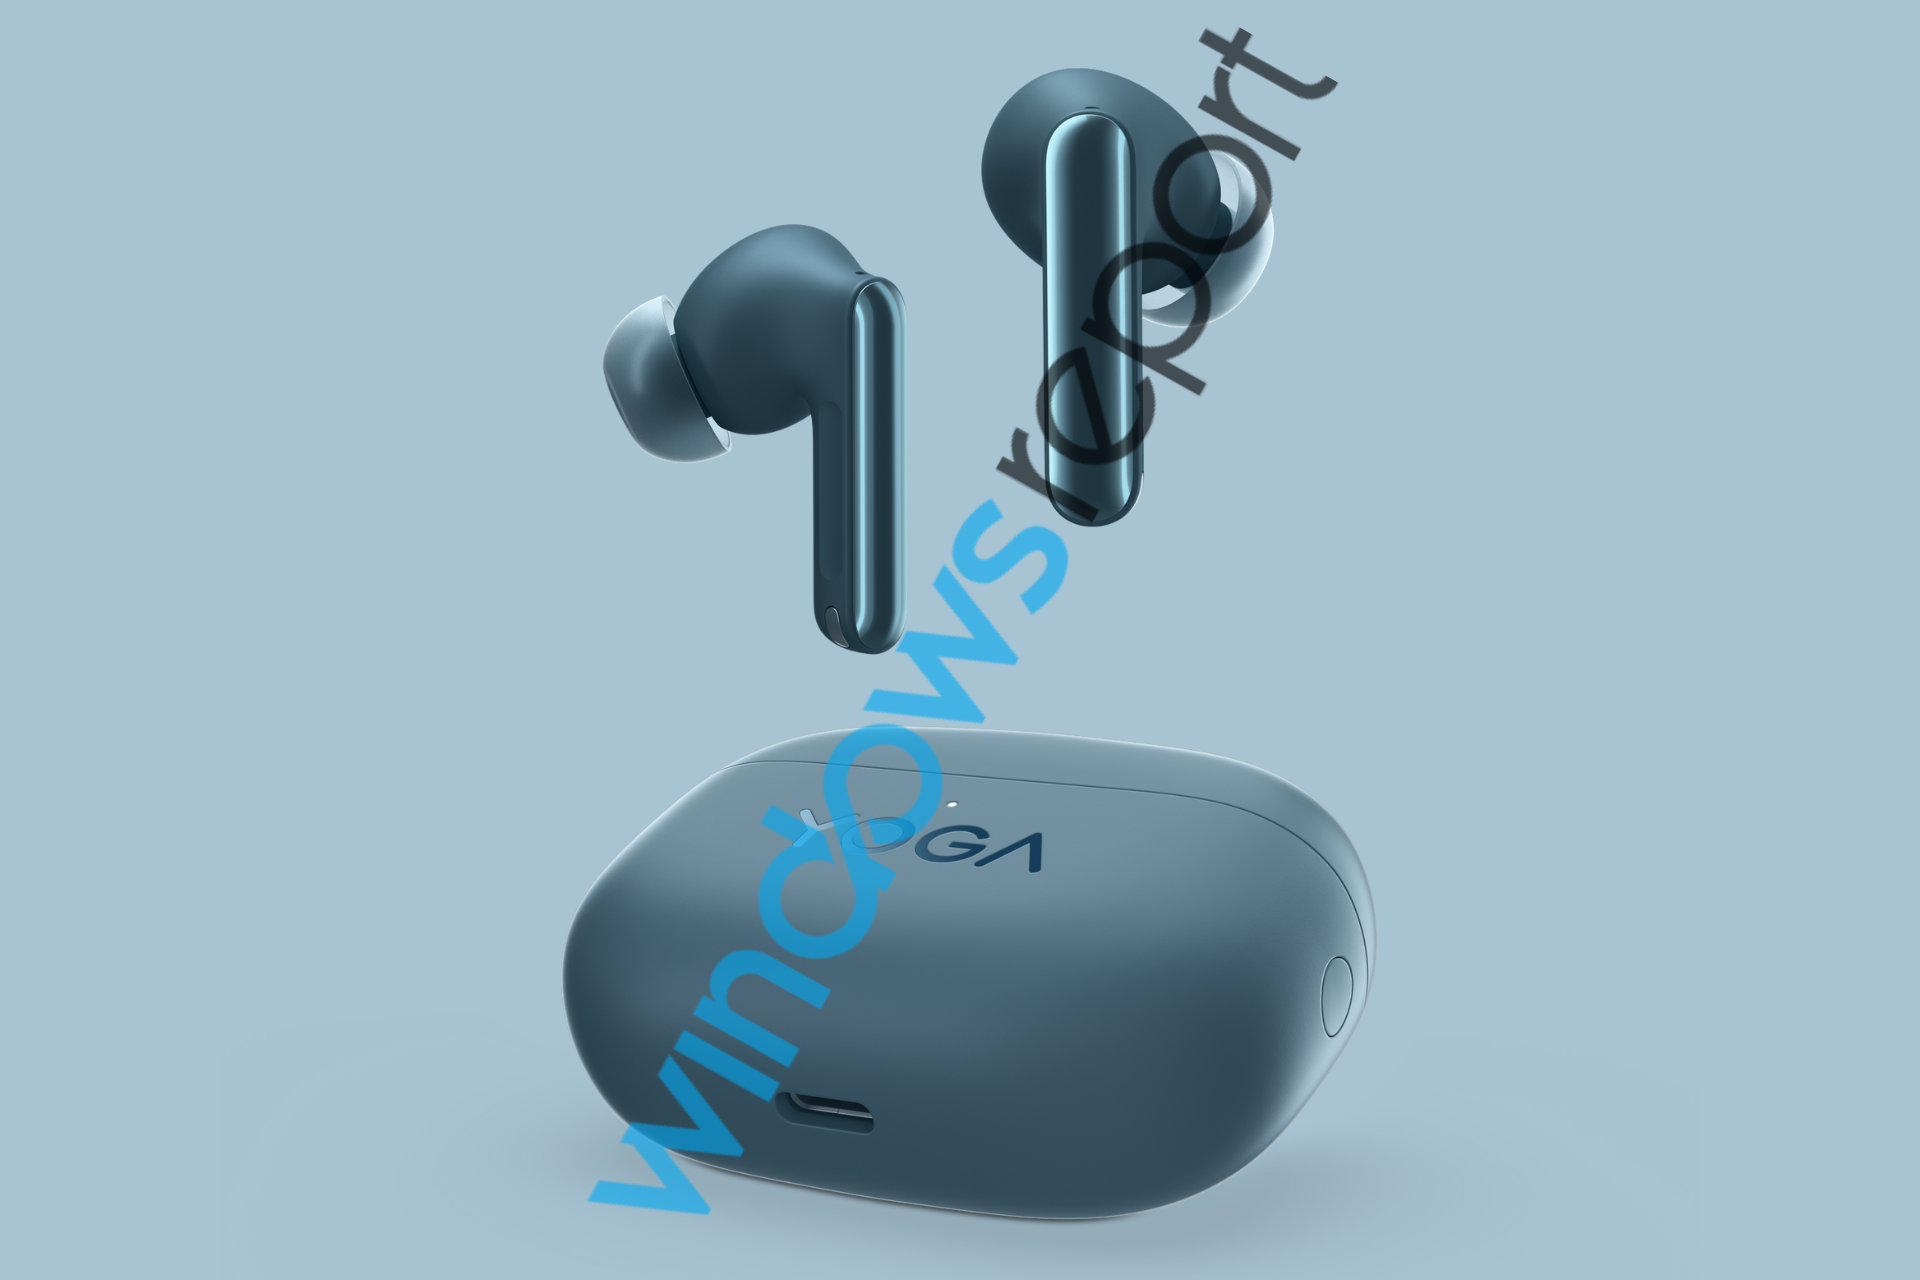 Lenovo s'apprête à commercialiser des écouteurs TWS Yoga avec ANC et Dolby Atmos